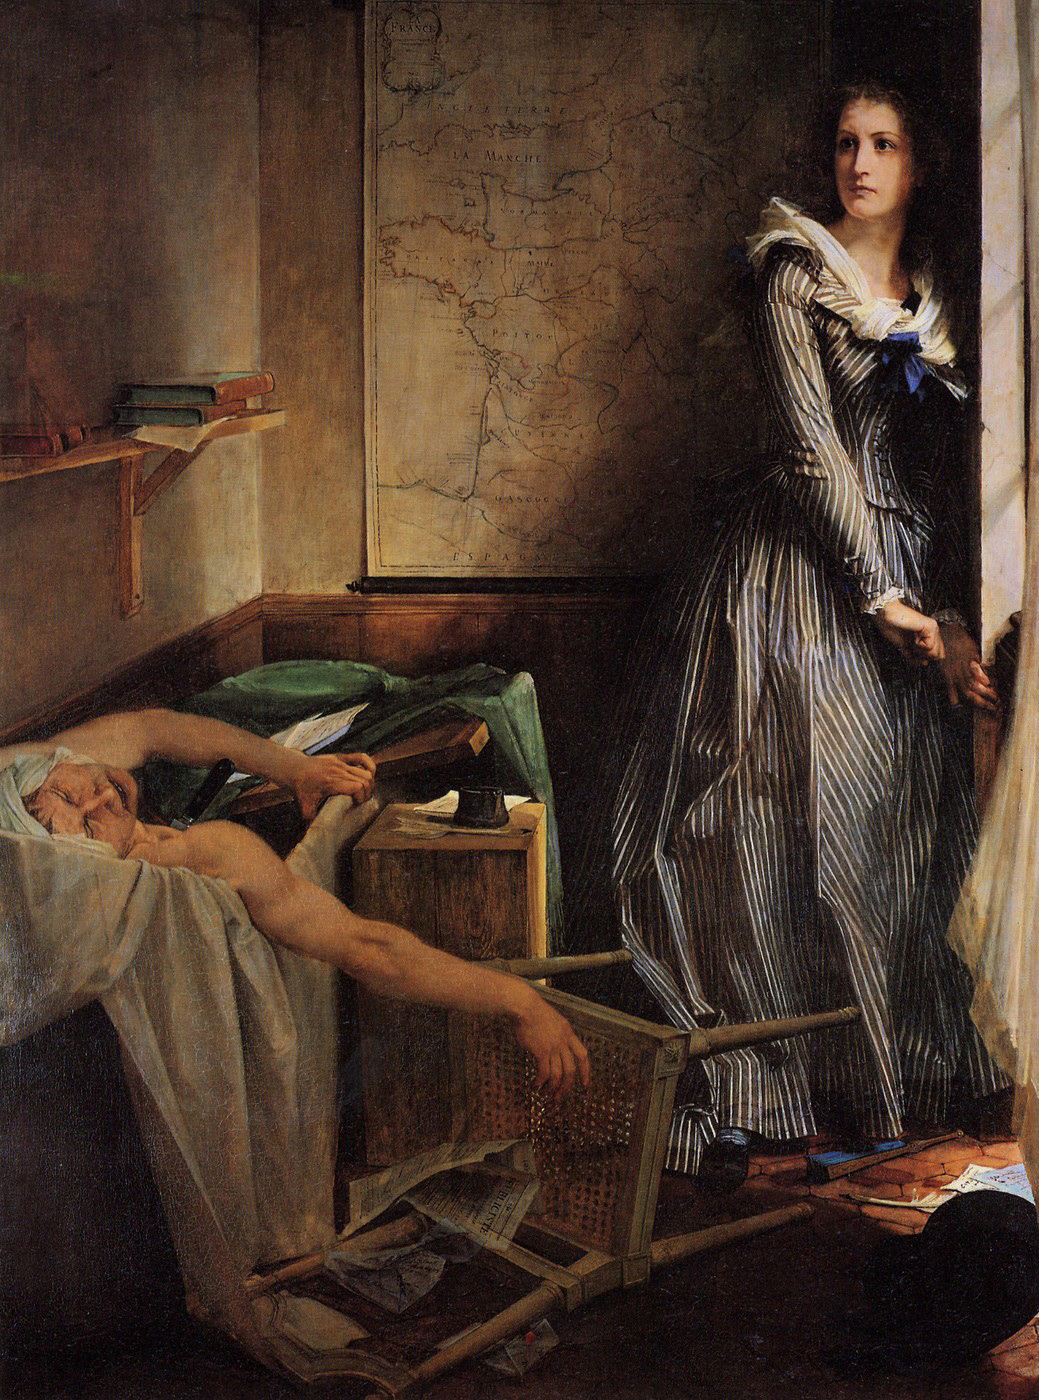 Charlotte Corday by Paul Baudry - 1860 - 203 × 154 cm Musée des Beaux-Arts de Nancy